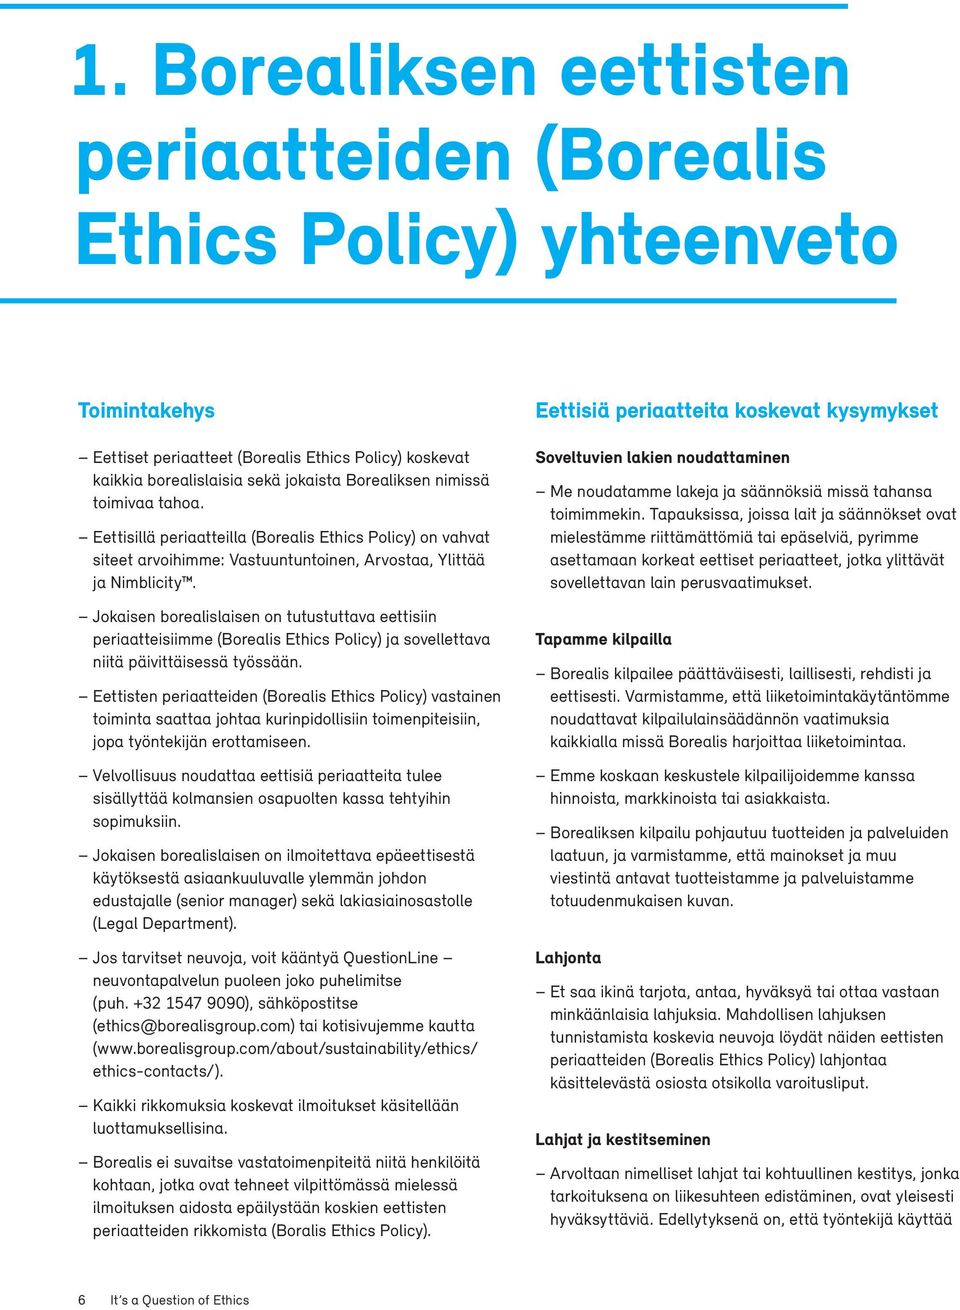 Jokaisen borealislaisen on tutustuttava eettisiin periaatteisiimme (Borealis Ethics Policy) ja sovellettava niitä päivittäisessä työssään.